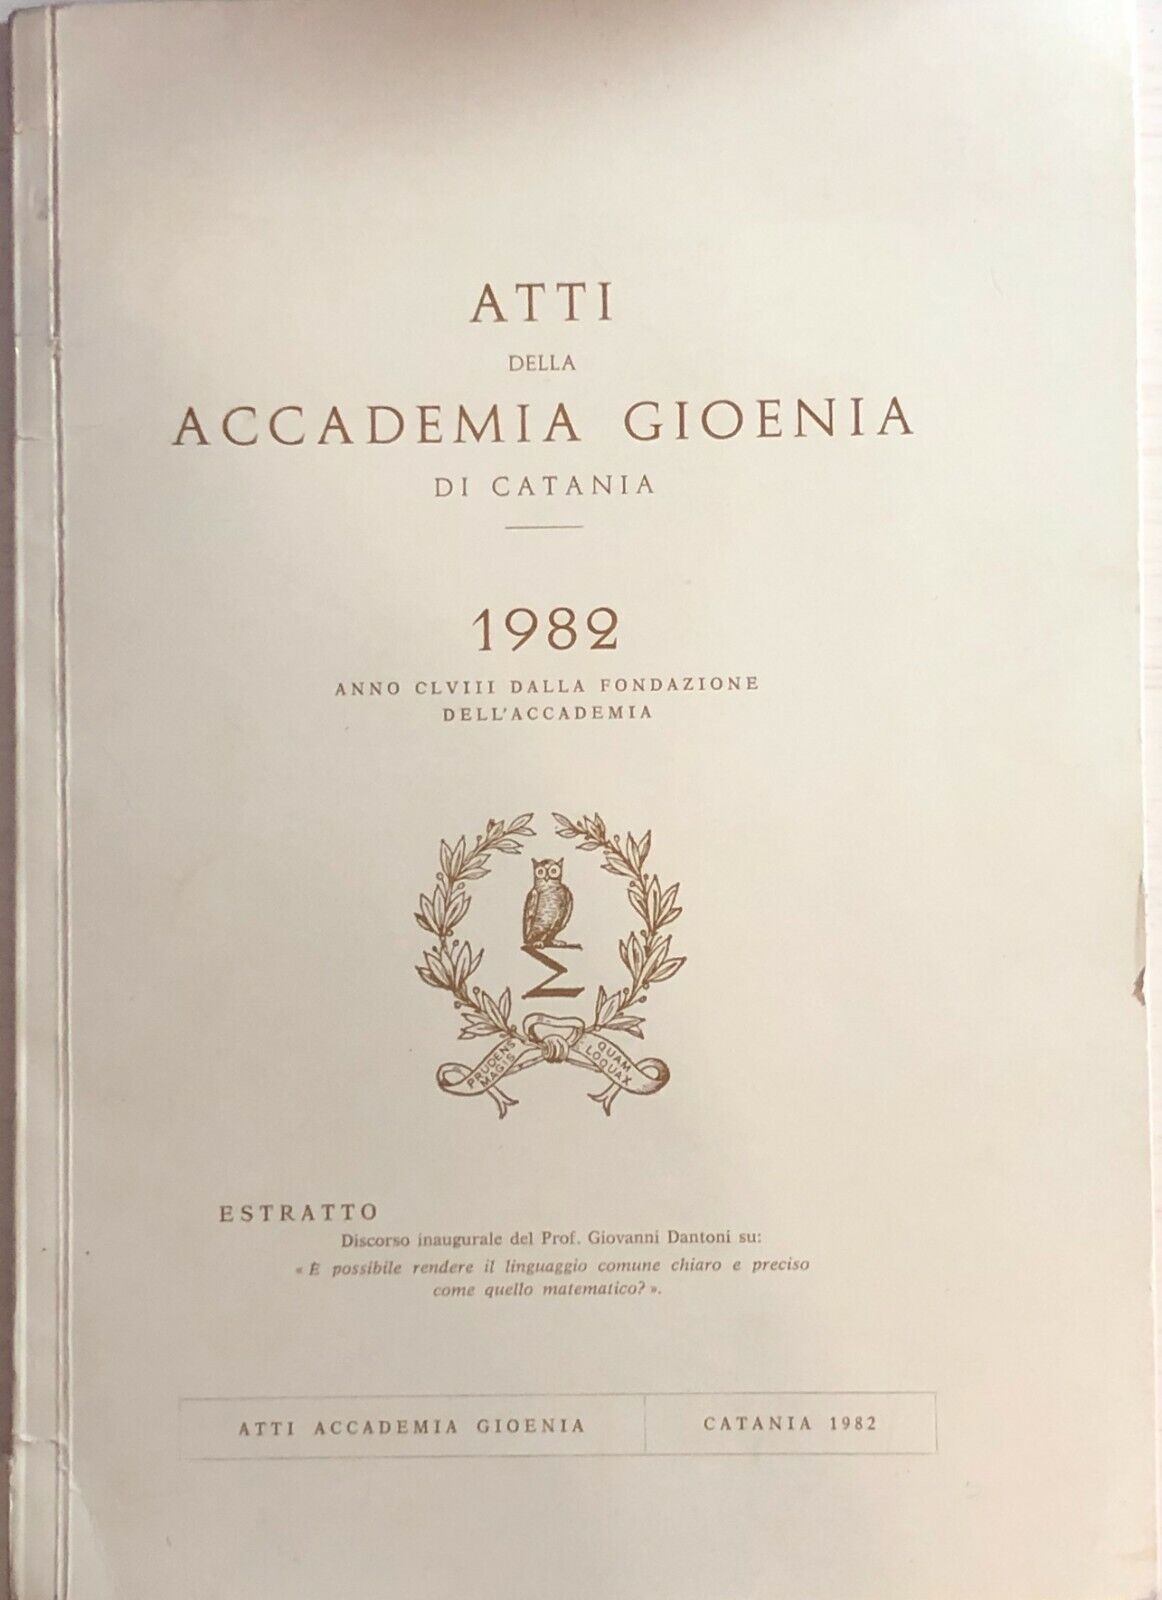 Atti della accademia Gioenia 1982 di Catania di Aa.vv., 1982, Accademia Gioenia